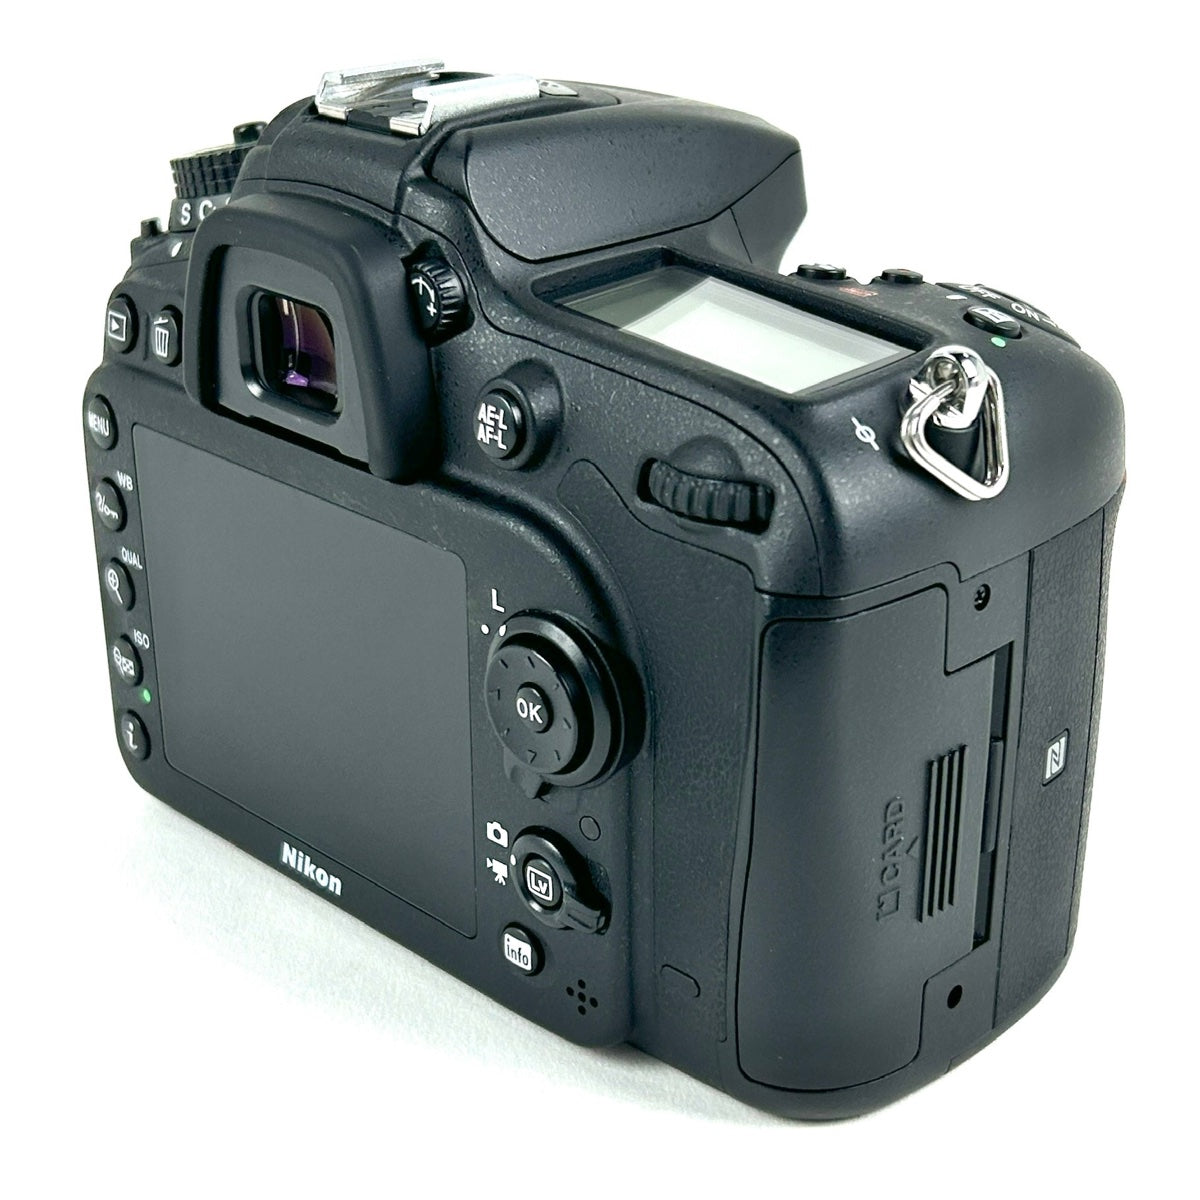 バイセル公式】ニコン Nikon D7200 ボディ デジタル 一眼レフカメラ 【中古】 バイセルブランシェ